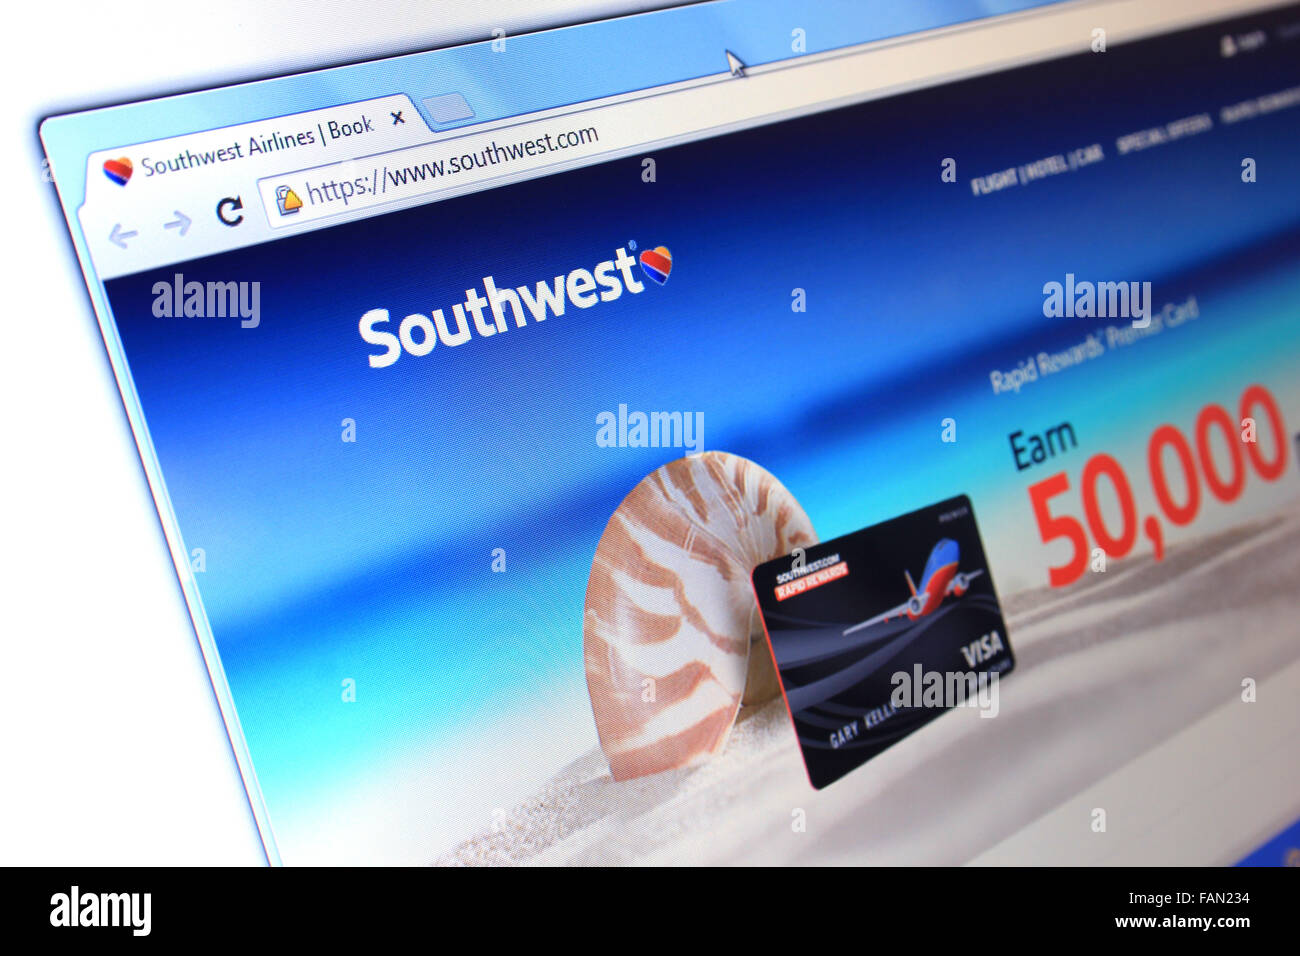 southwest.com website Stock Photo